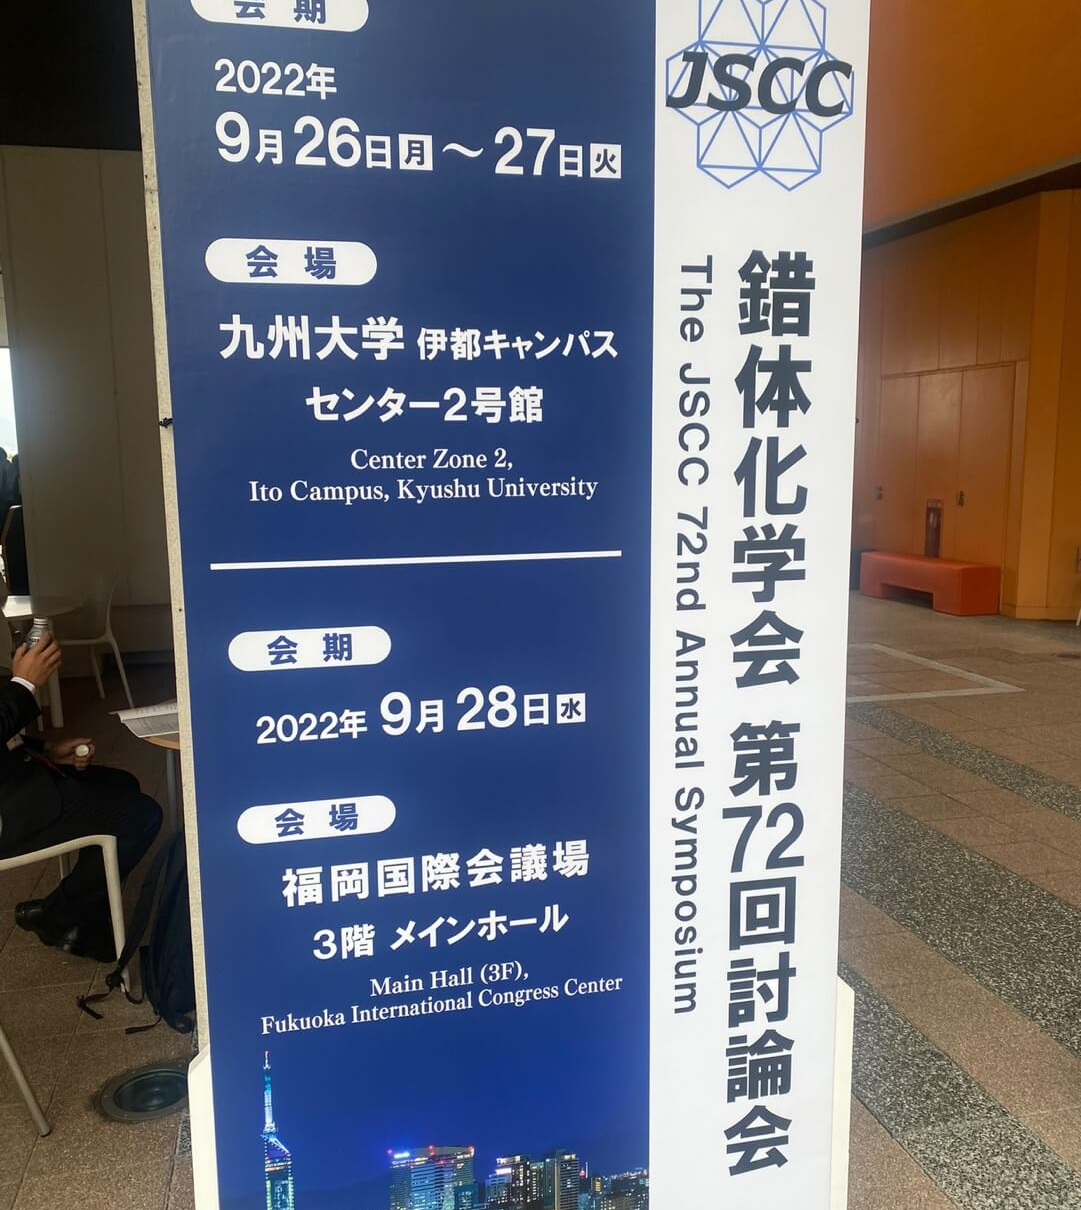 일본 coordination chemistry 학회